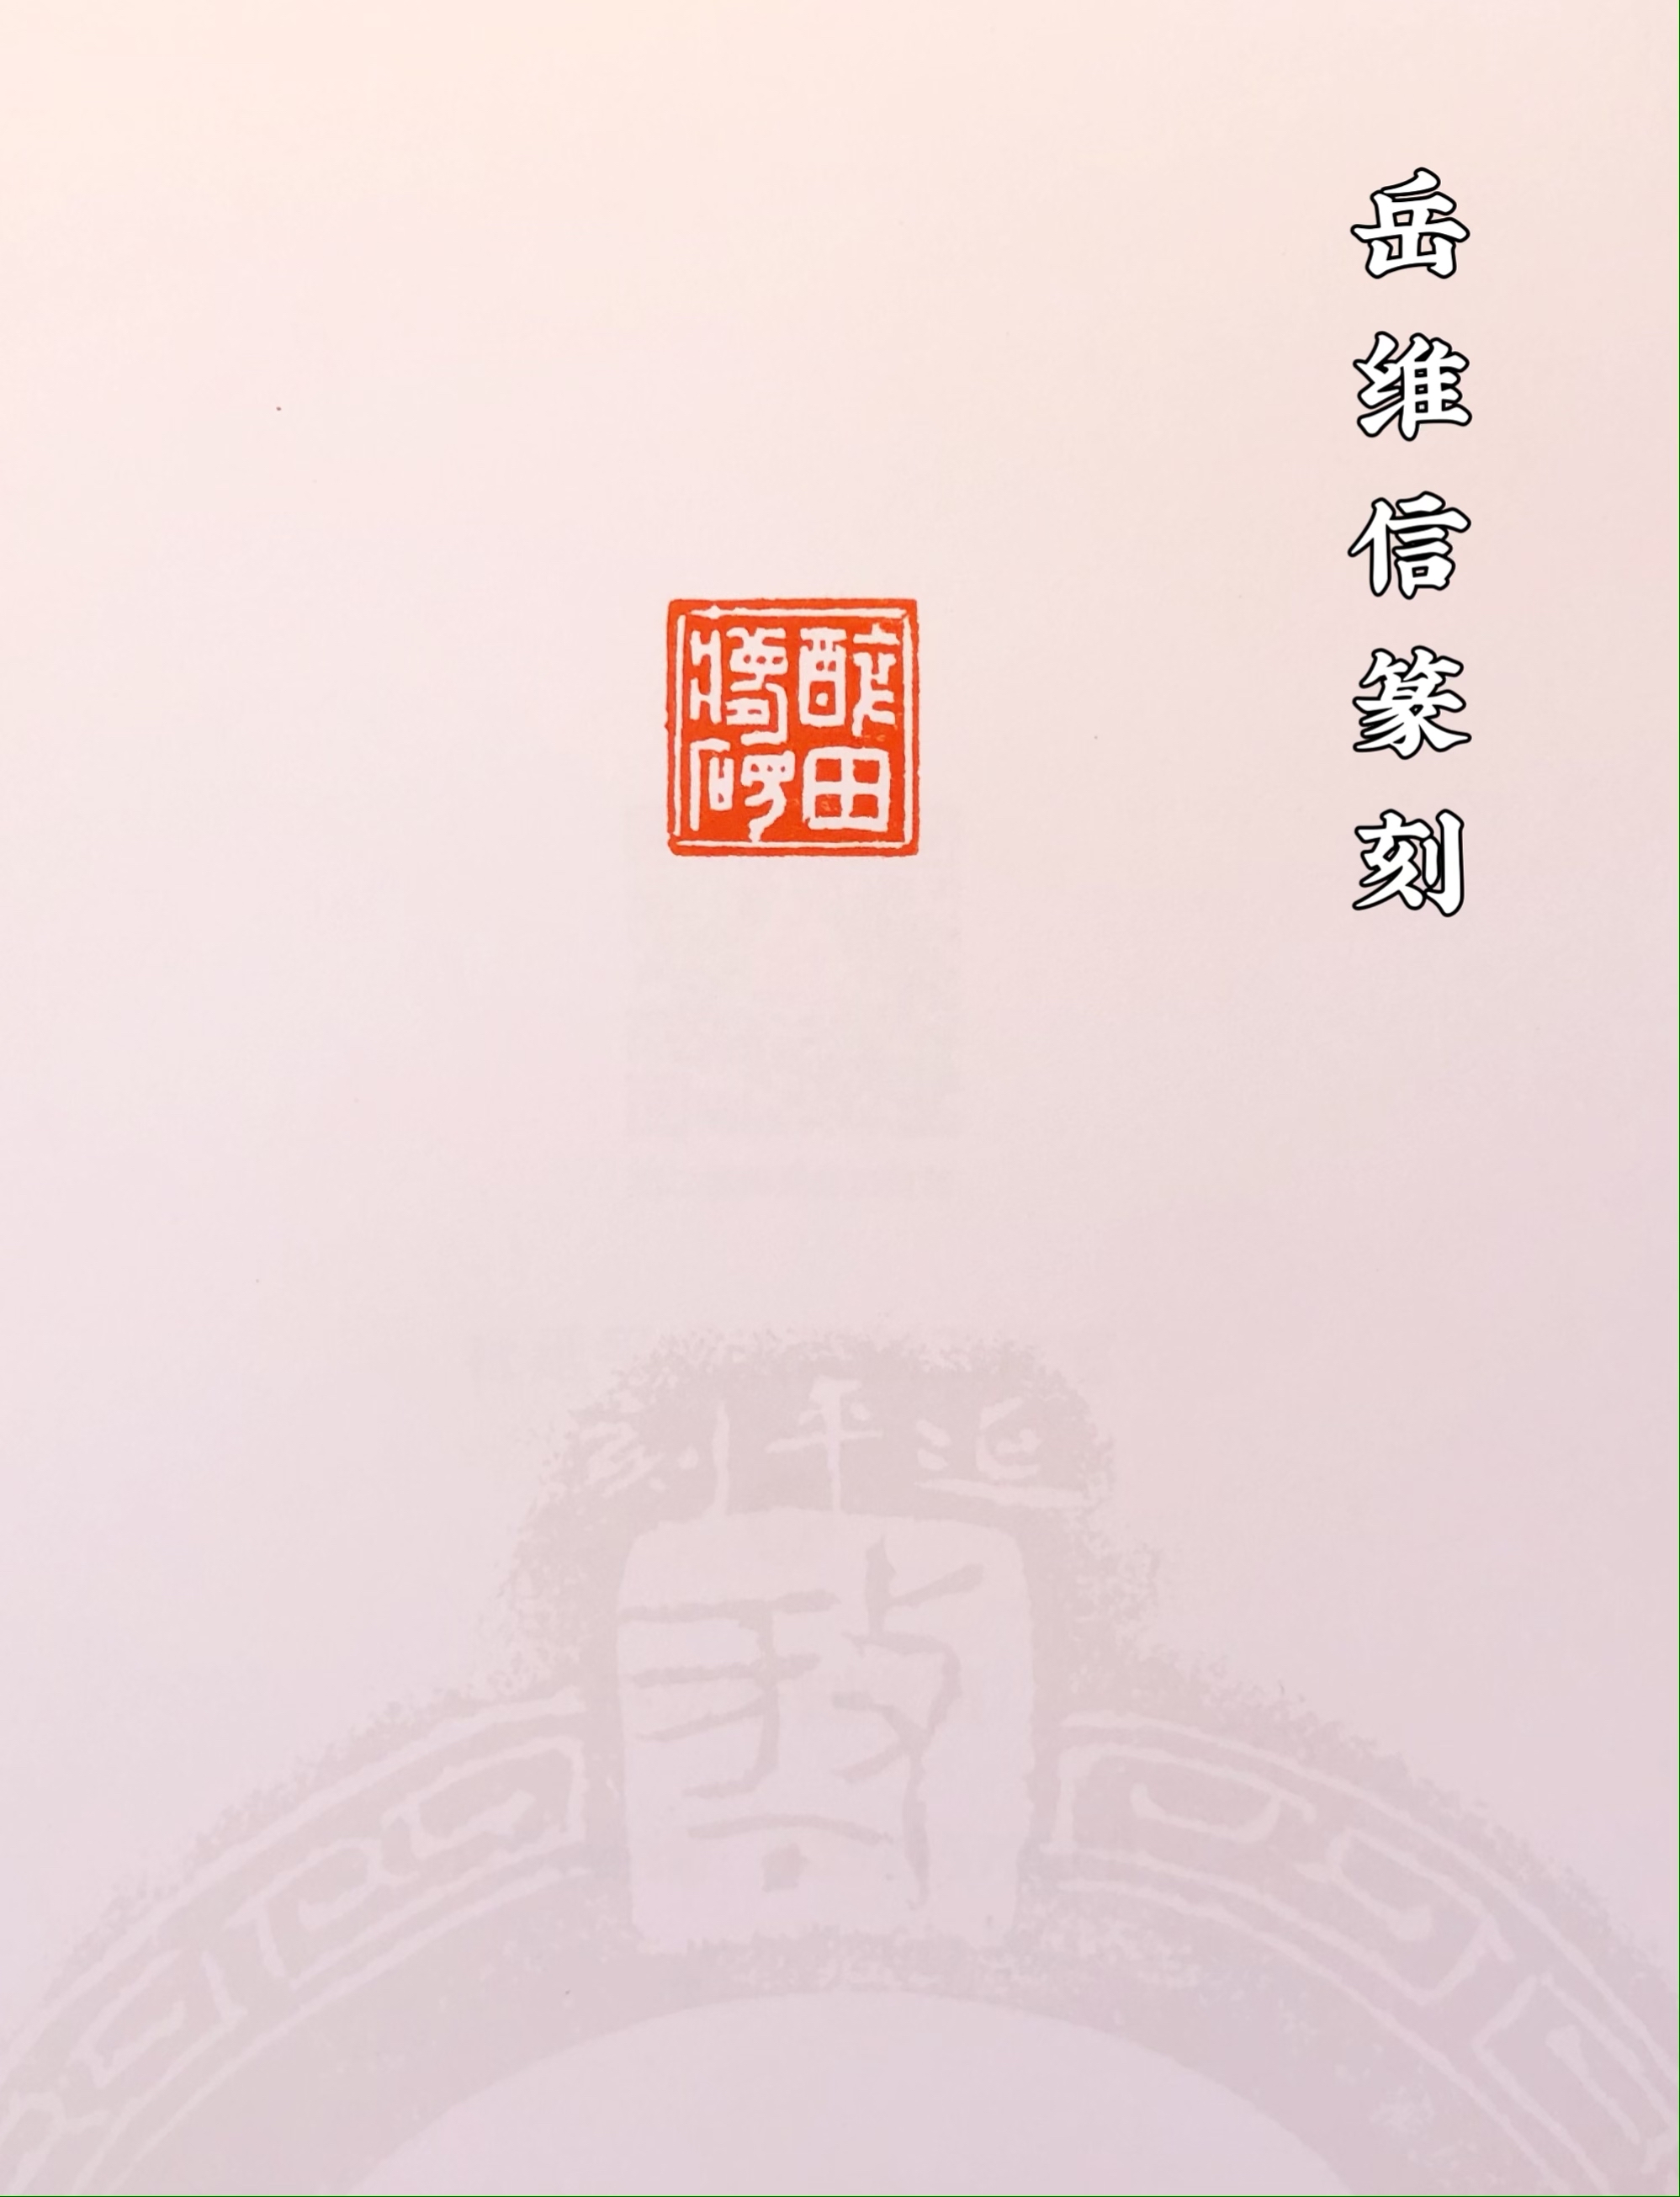 寿山芙蓉石印章，篆刻